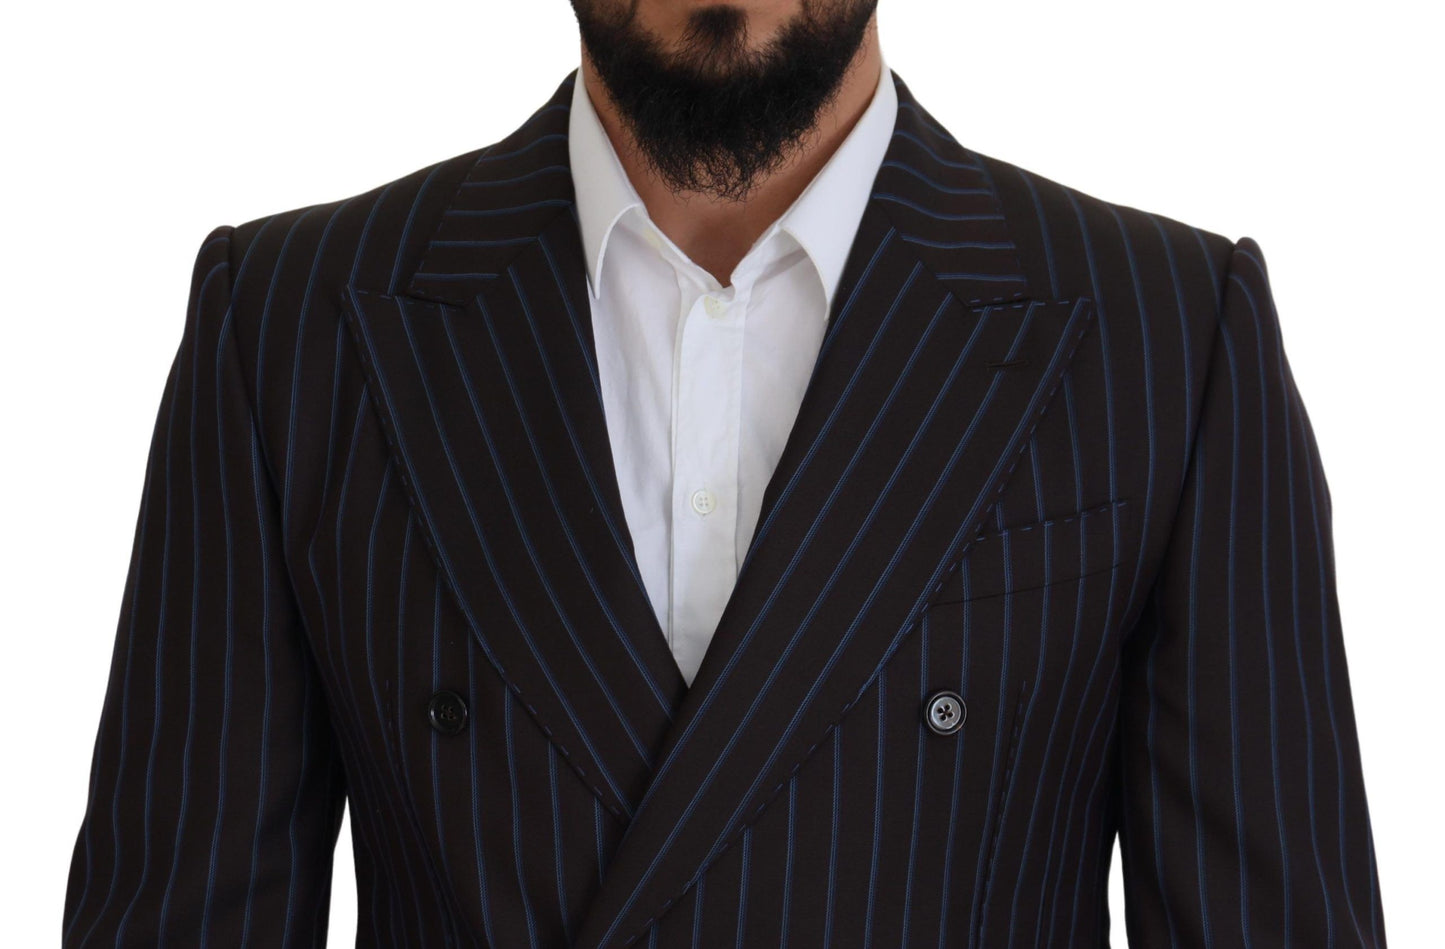 Elegant Black Striped Virgin Wool Suit